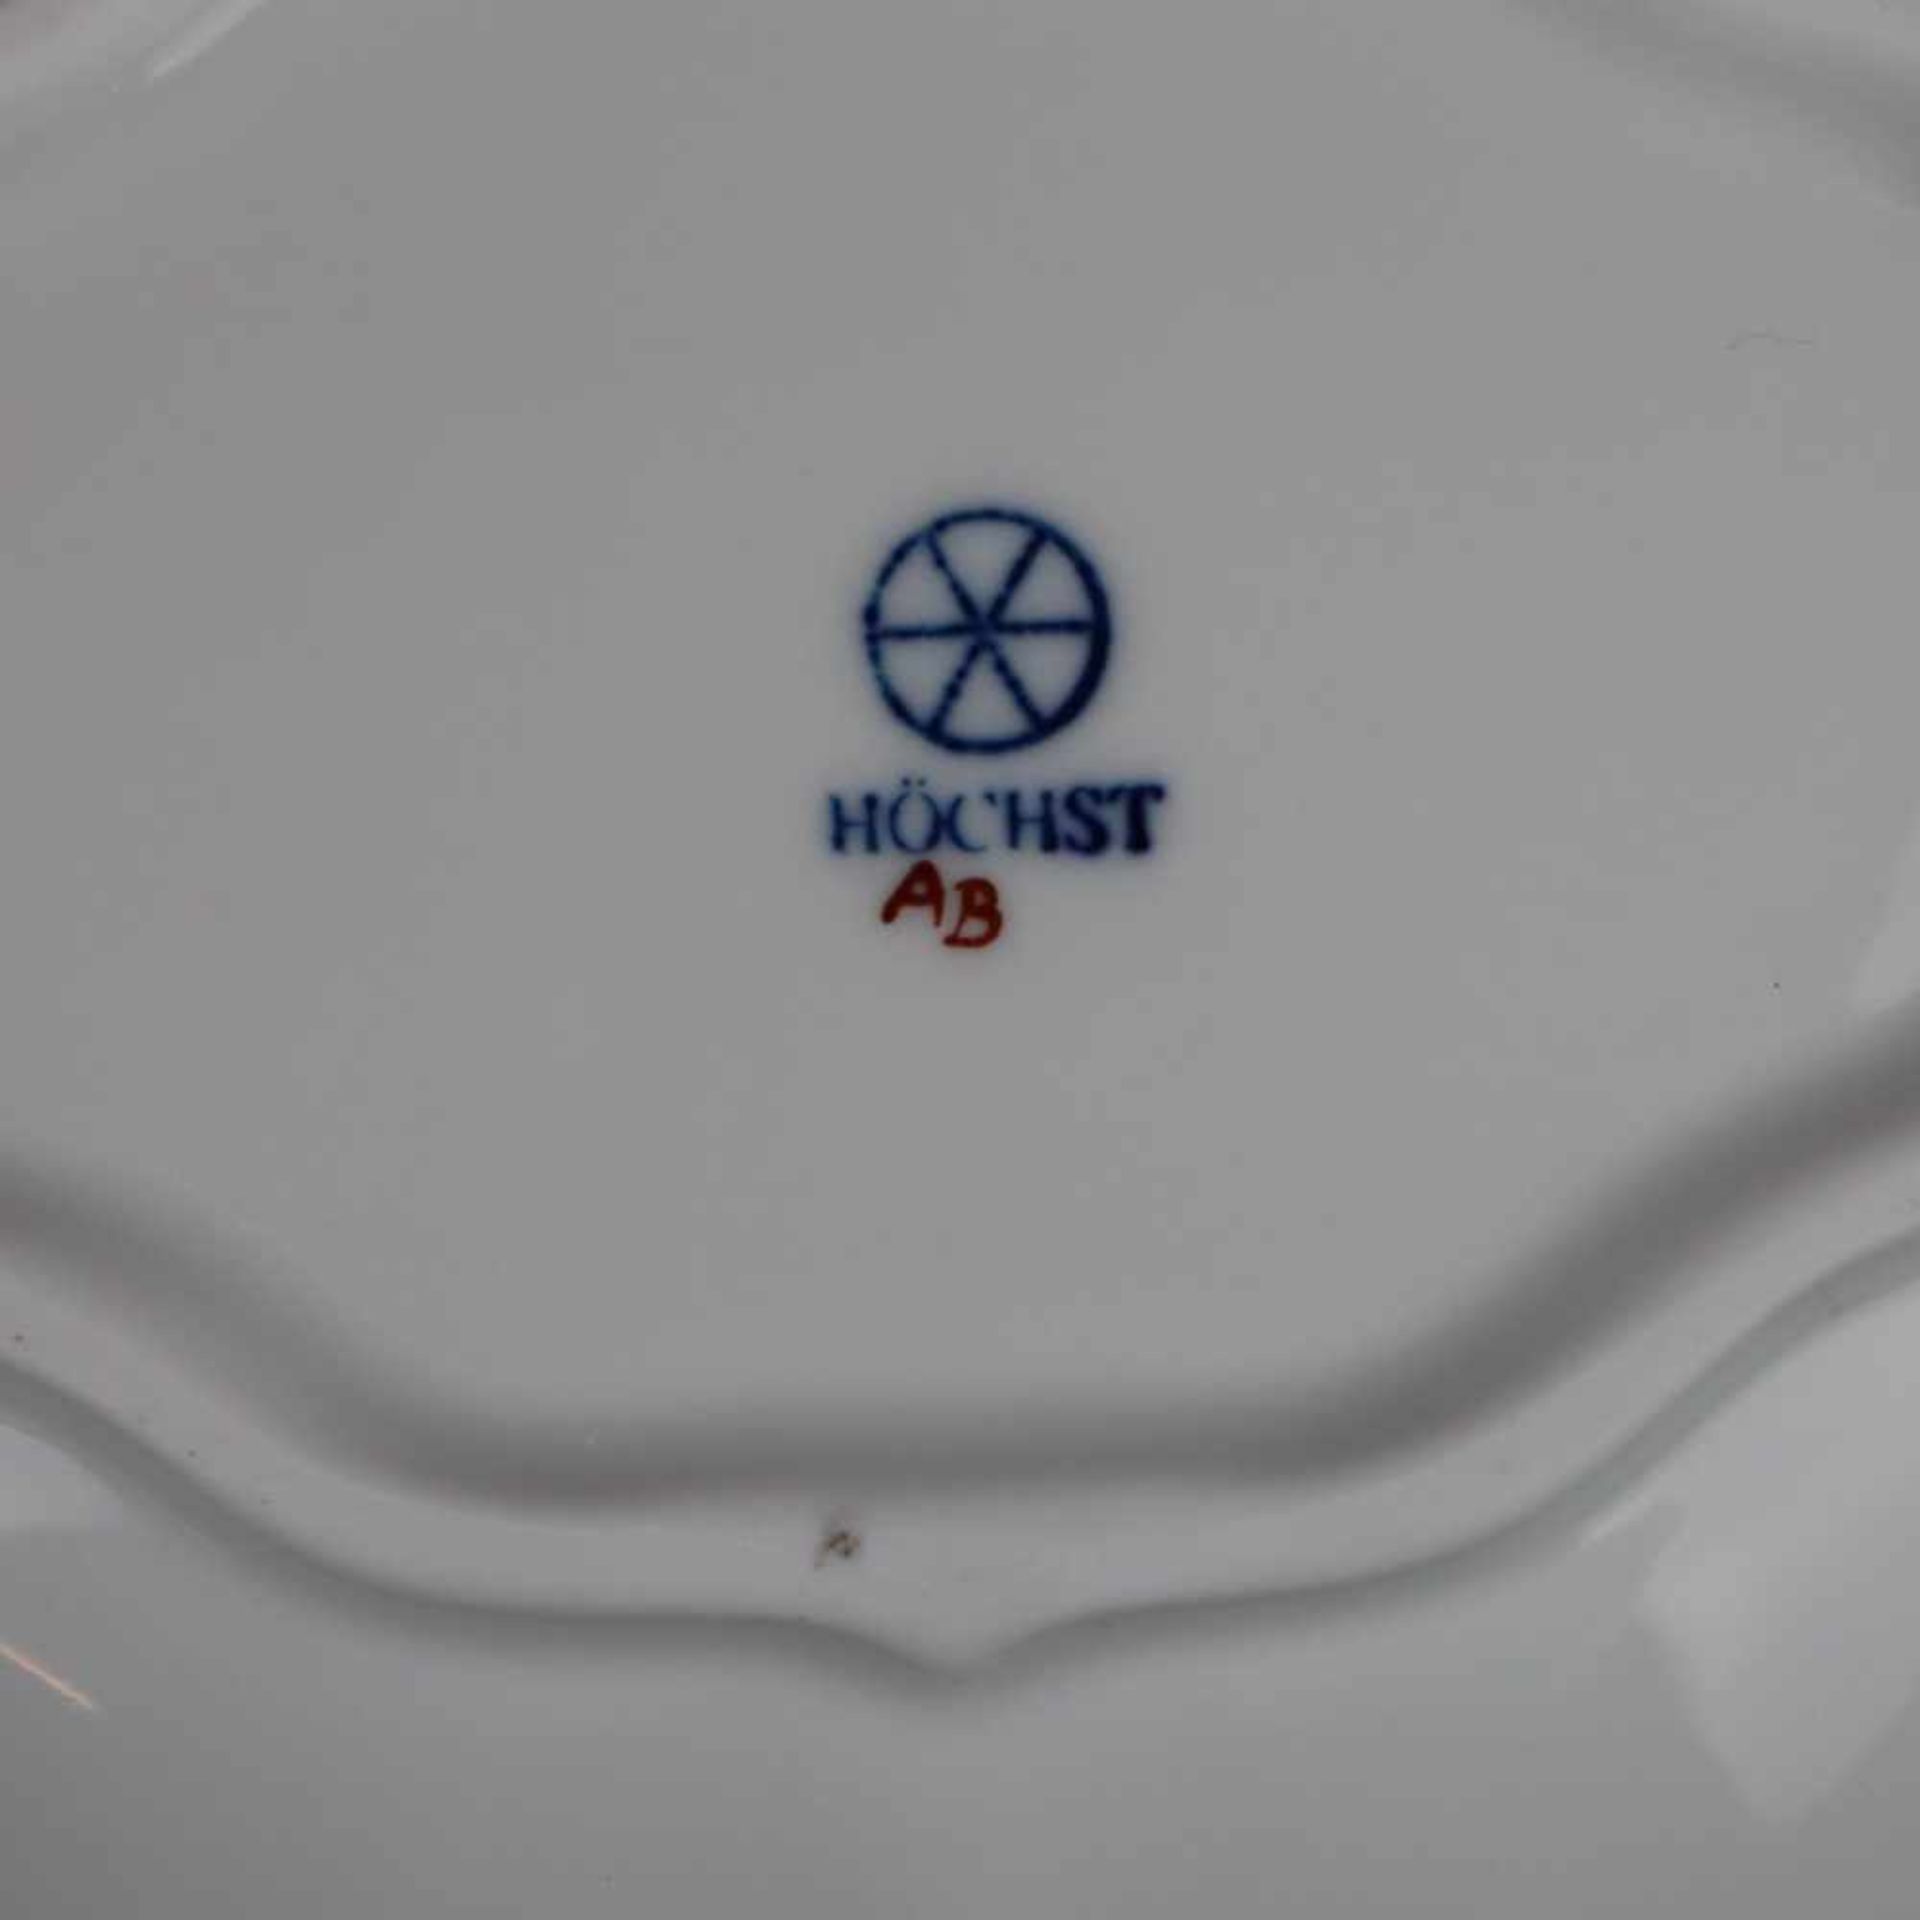 Schale - Hoechst, blaue Radmarke mit Malerzeichen "AB", Vierpass-Form, im Spiegel polychromer - Bild 5 aus 5